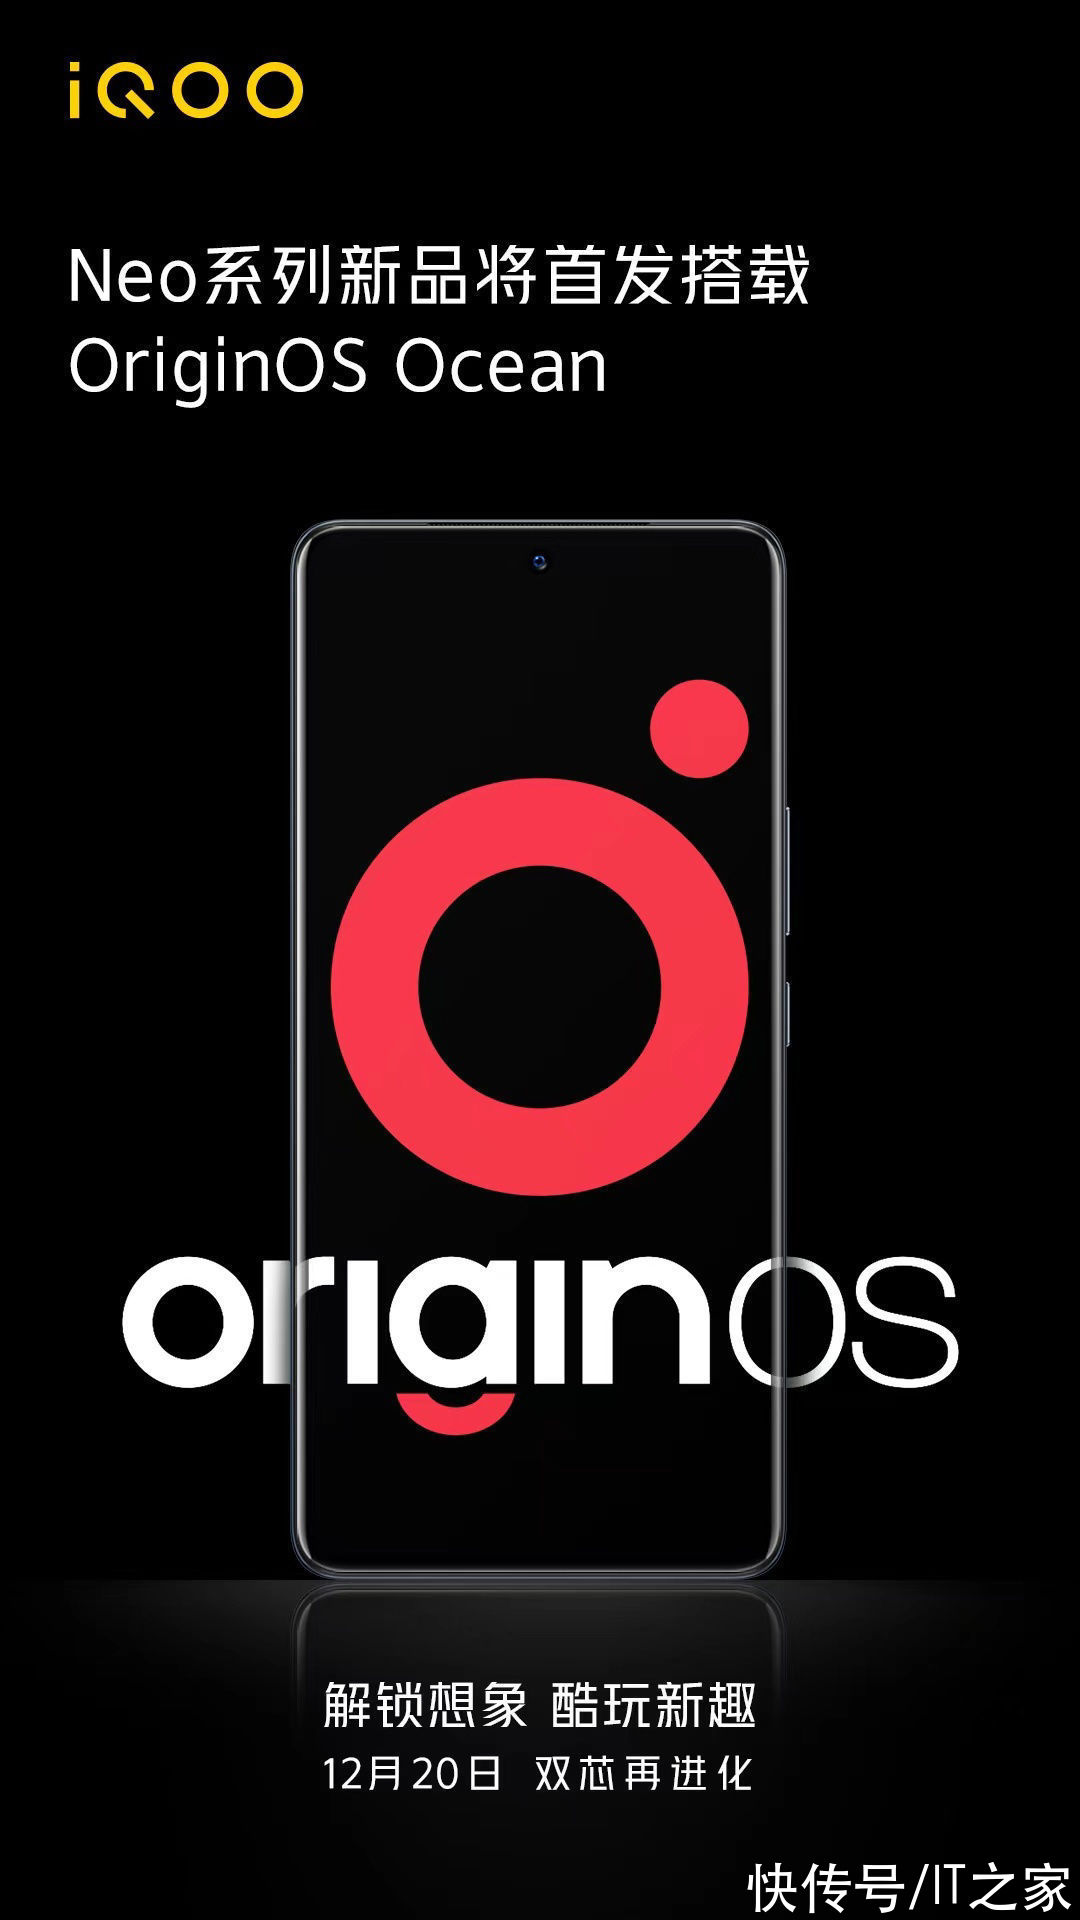 originos oceiQOO Neo 系列新机 12 月 20 日发布，首发原系统 OriginOS Ocean